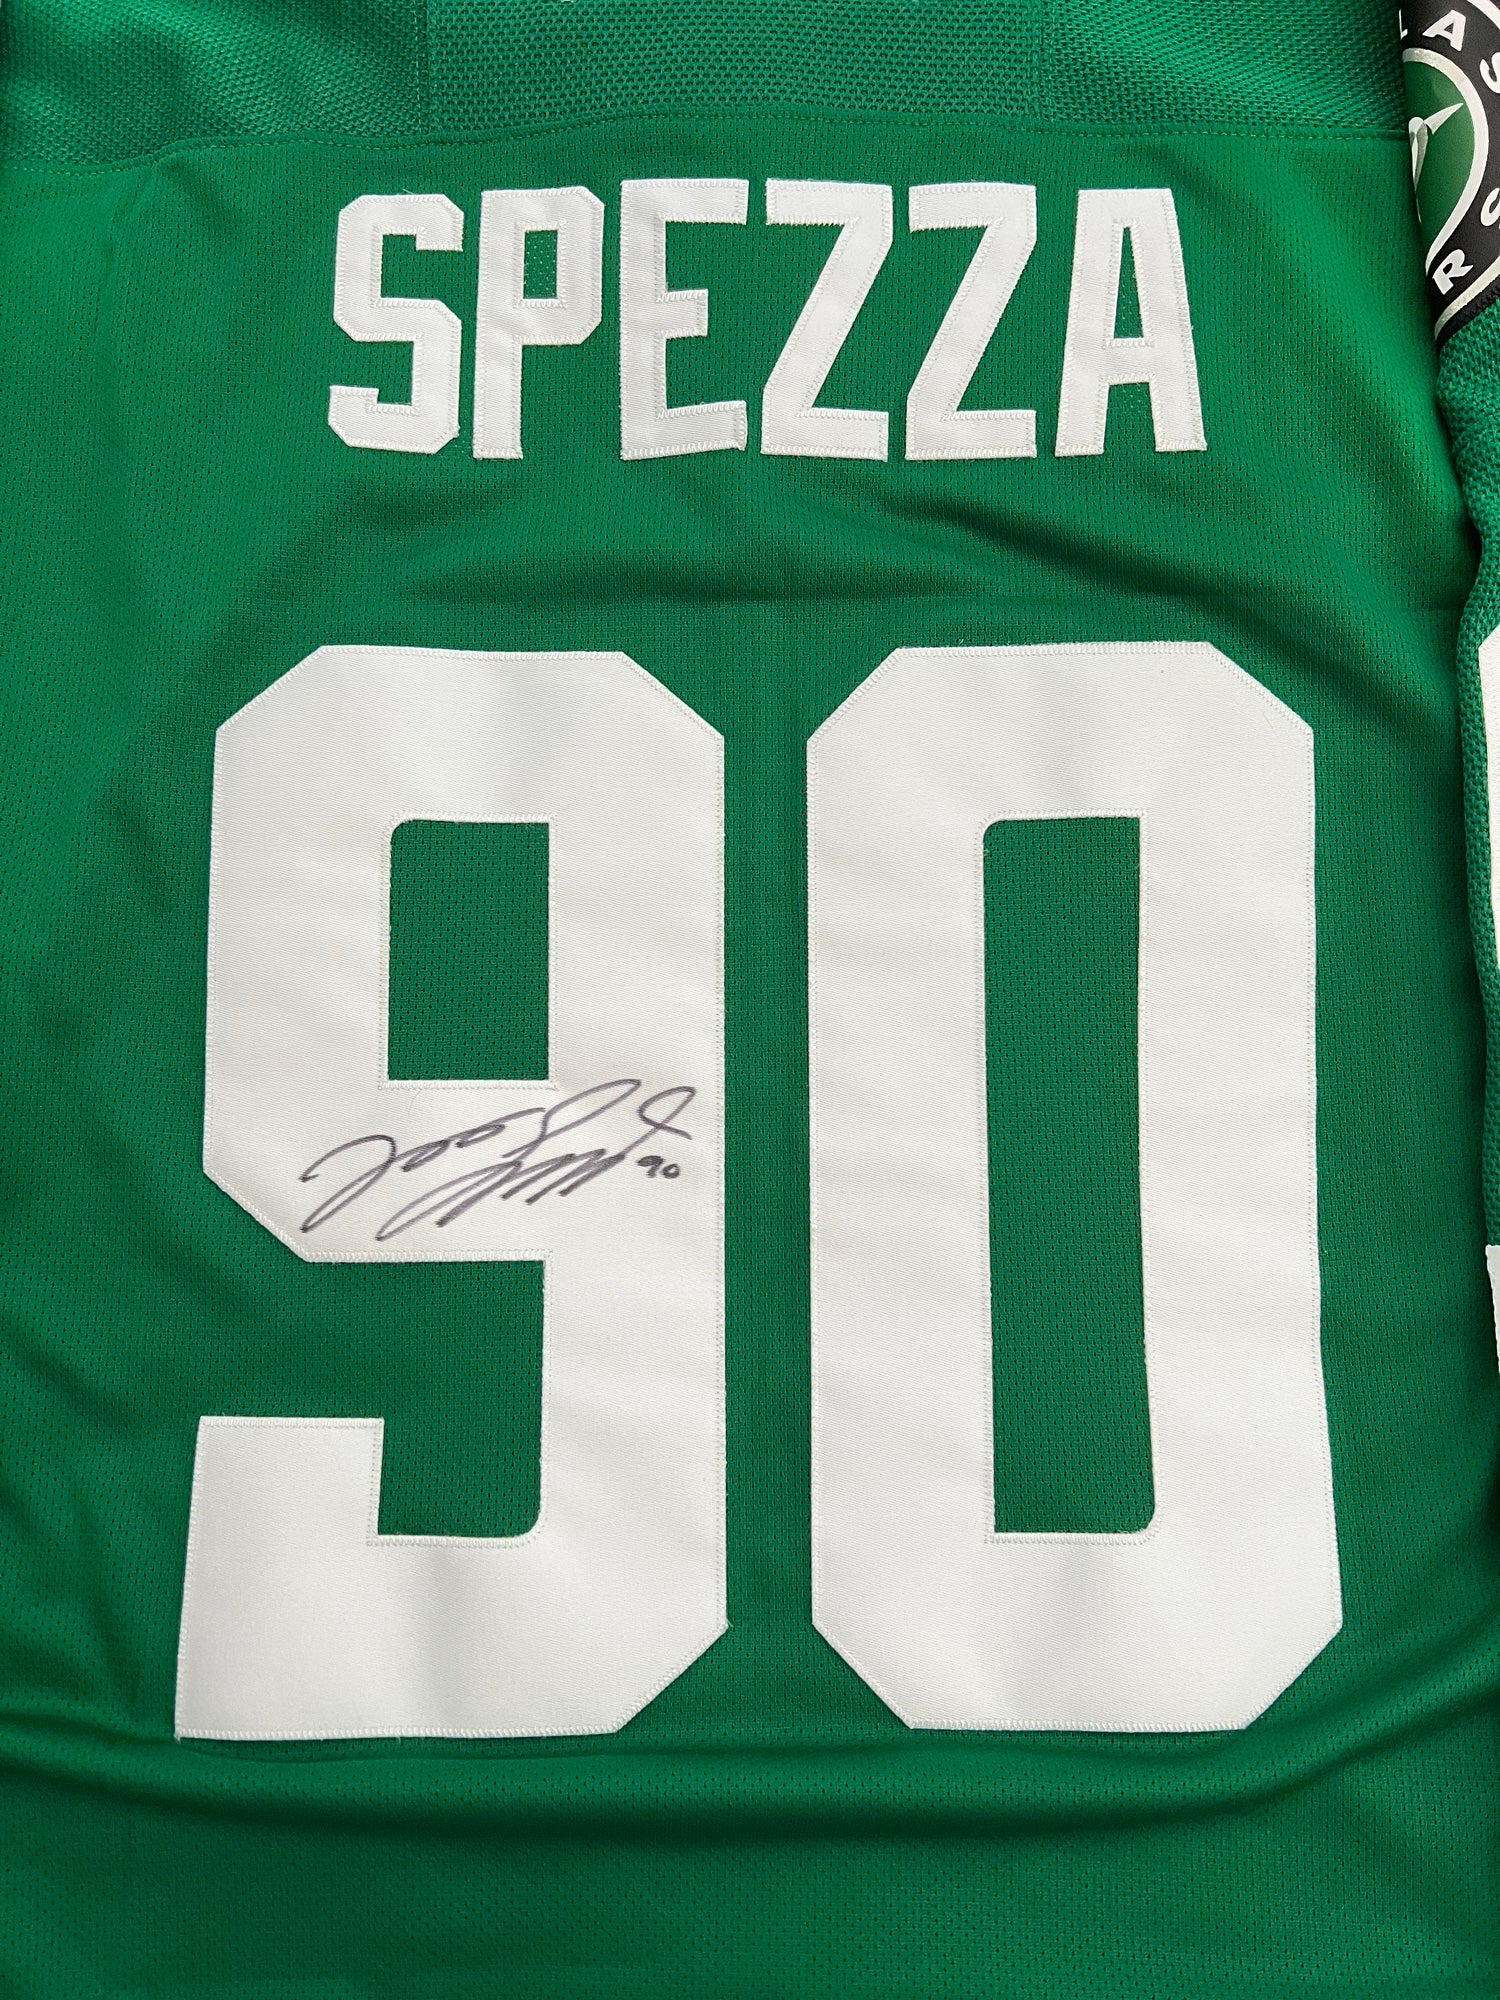 Jason Spezza Signed Jersey